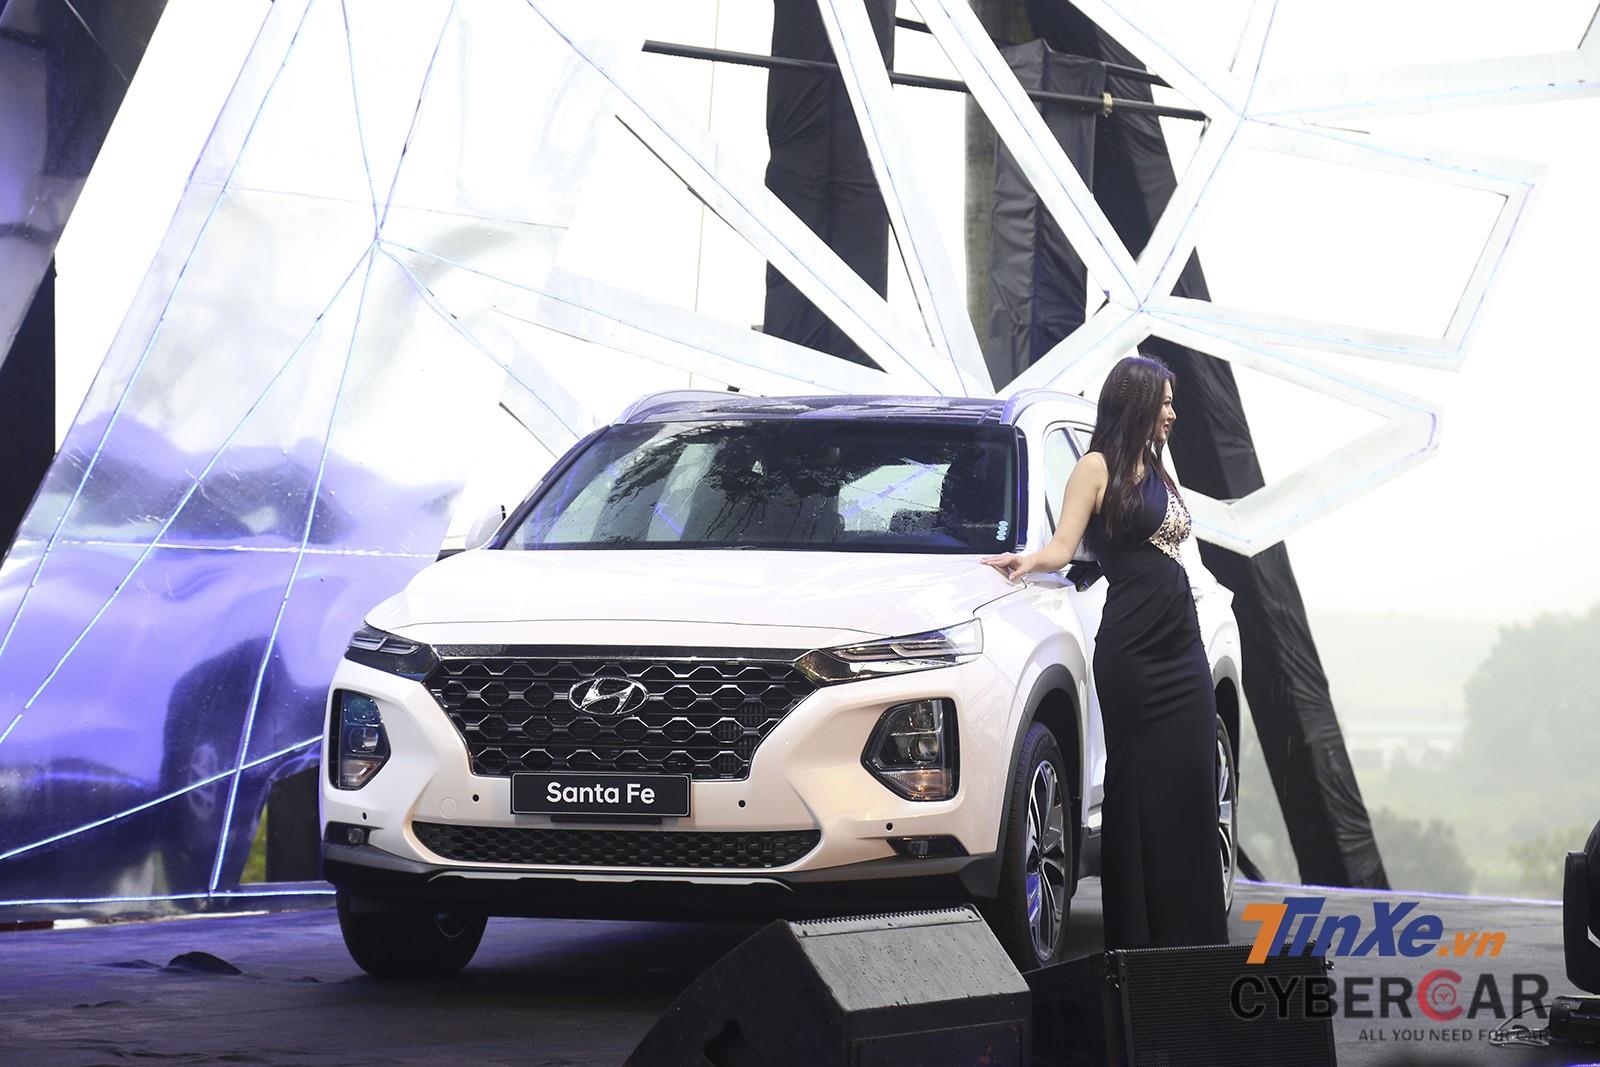  Hyundai Santa Fe 2019 là một trong những cái tên “hot” trong những tháng cuối năm 2018, đầu 2019